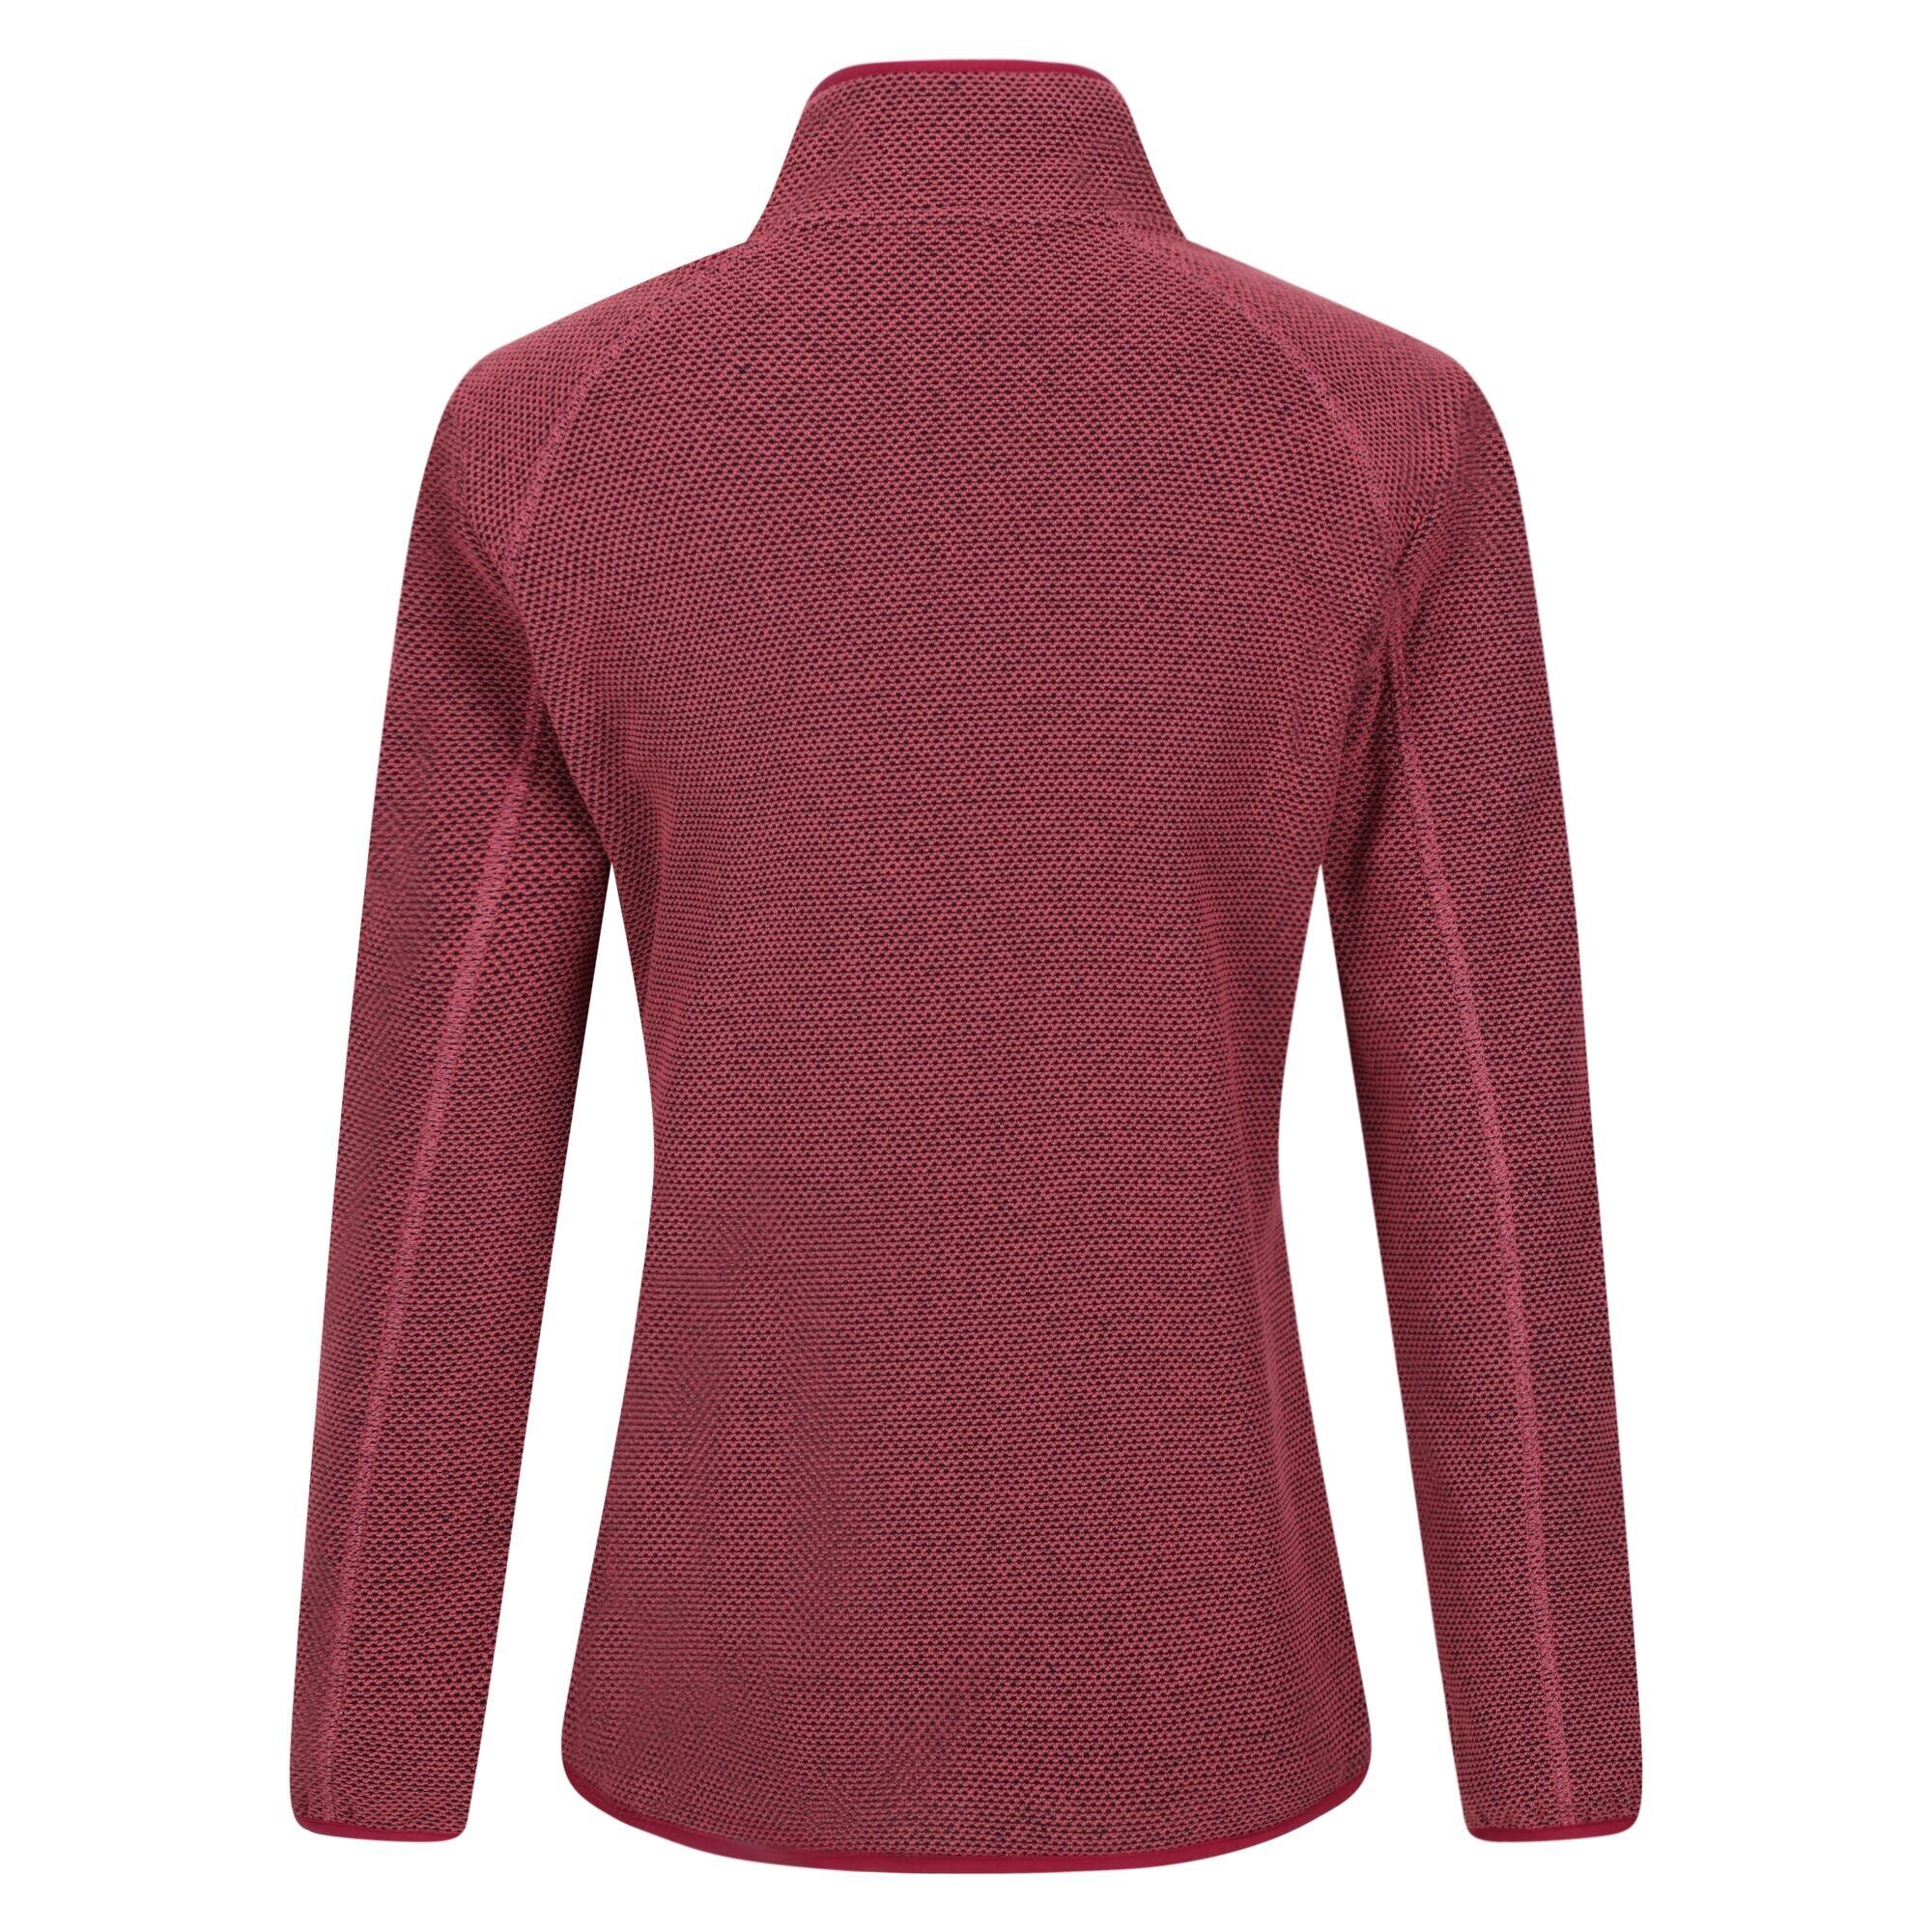 Womens/Ladies Kinwood Full Zip Fleece Jacket (Mineral Red/Rumba Red) 2/5